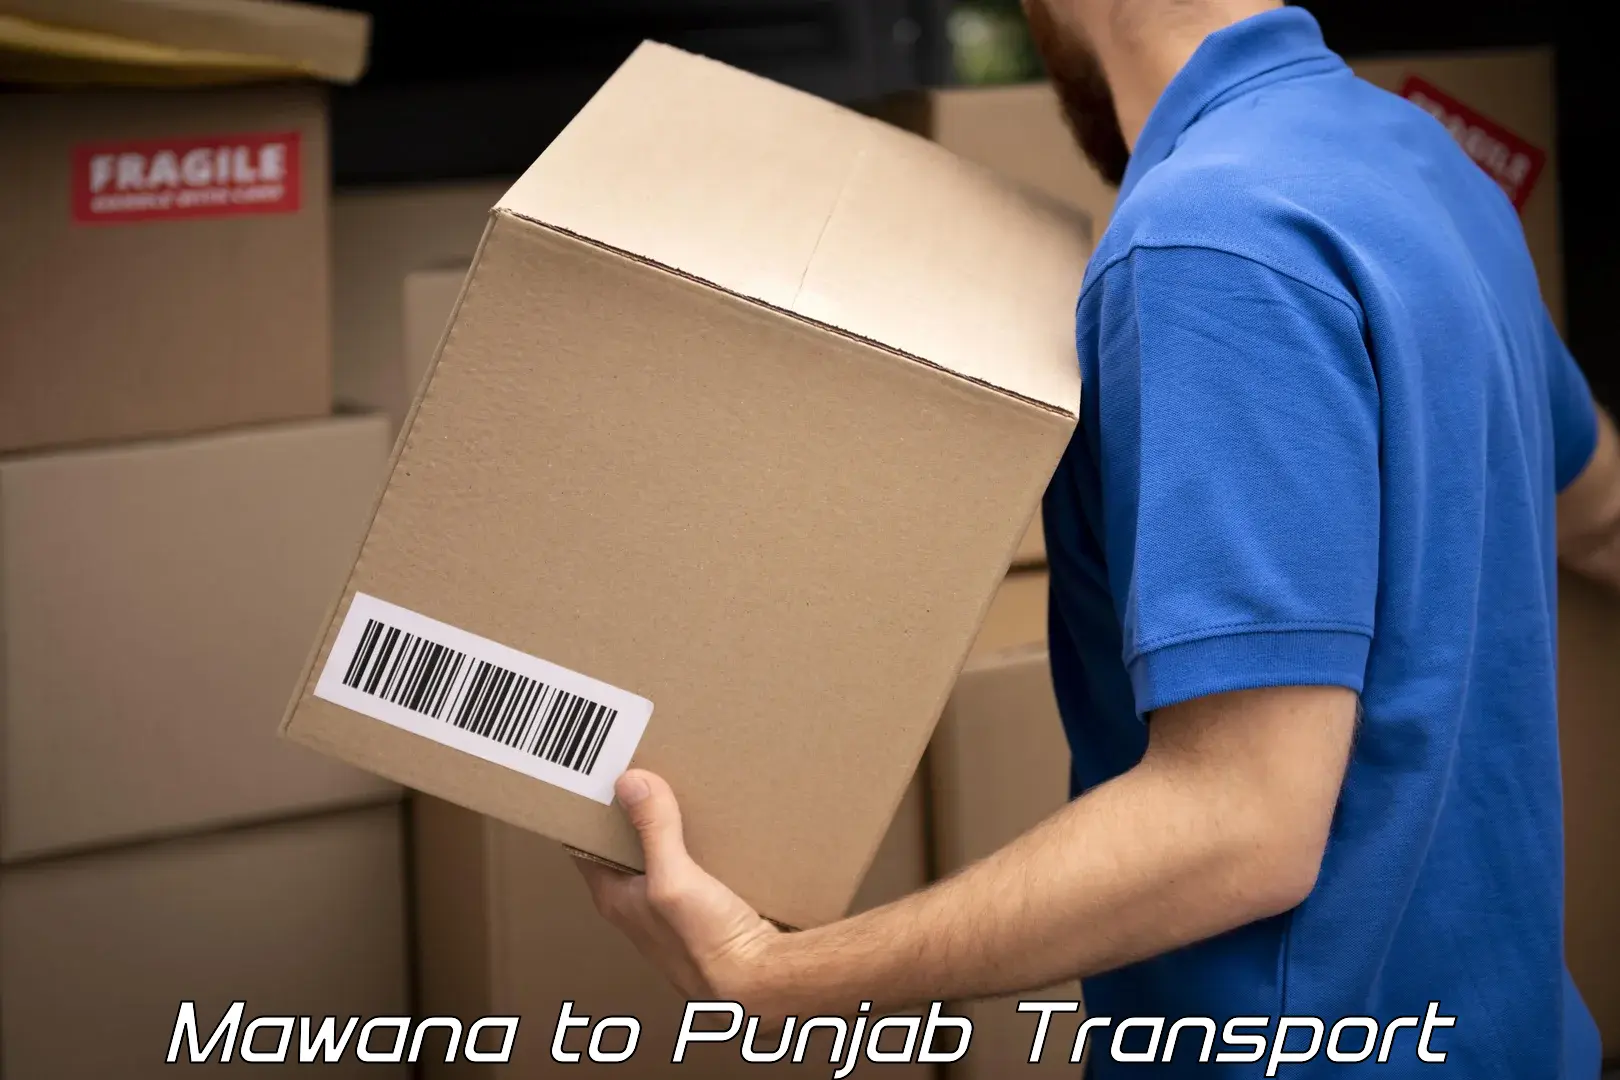 International cargo transportation services Mawana to Ludhiana